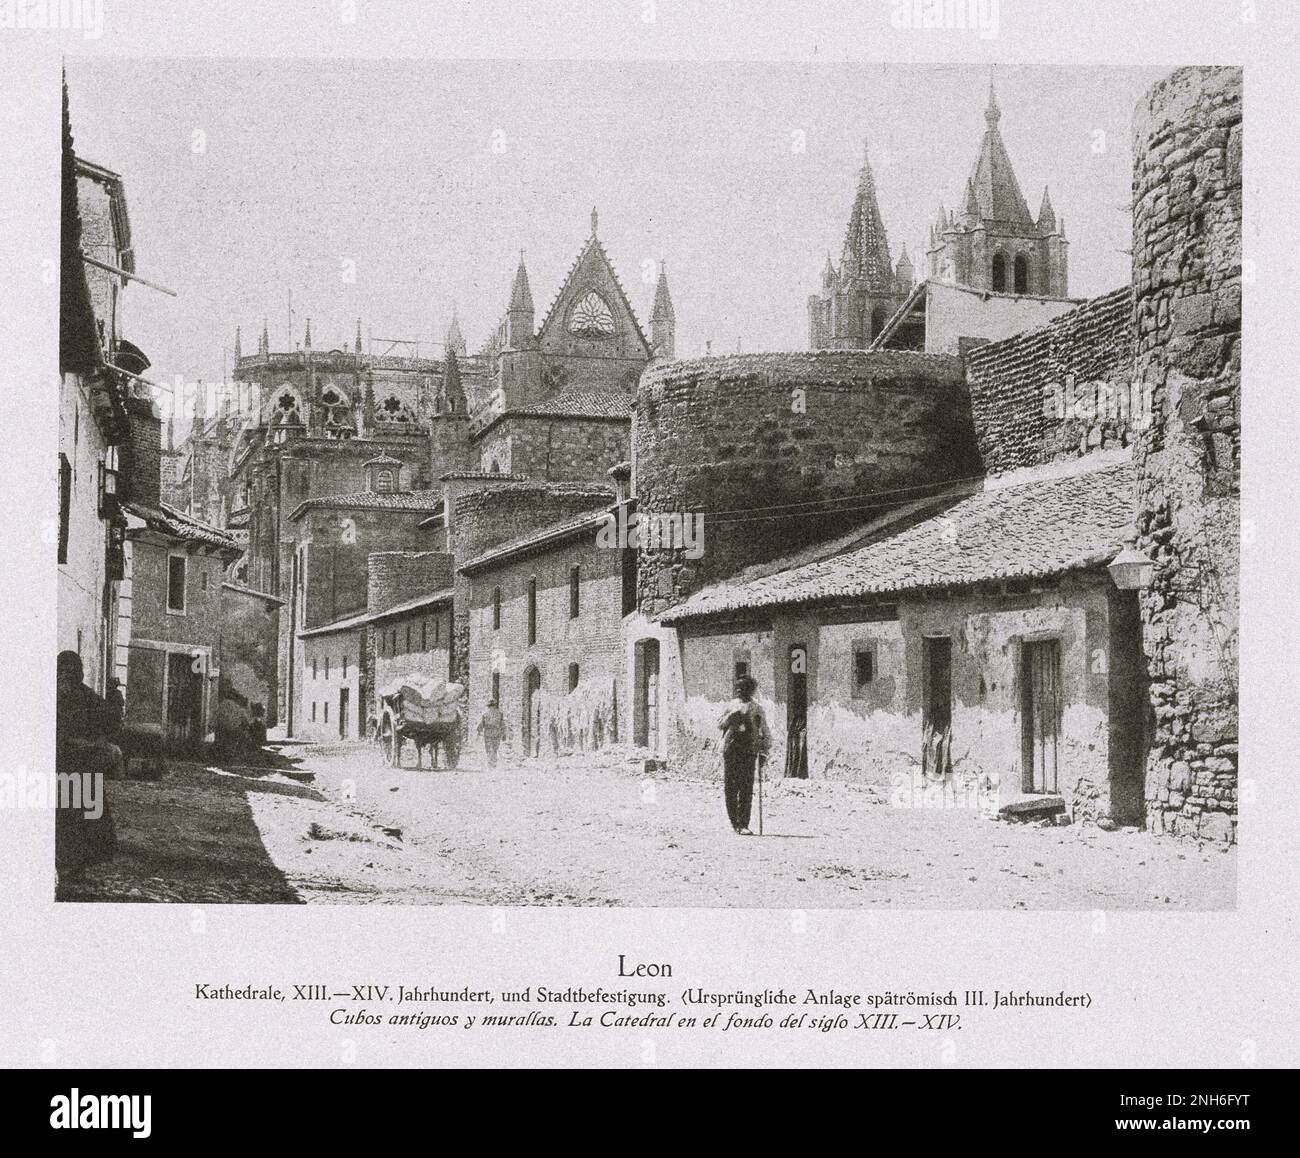 Architektur des alten Spaniens. Vintage-Foto von Leon. Kathedrale, XIII.-XIV. Jahrhundert und Stadtbefestigung. (Originalanlage des späten Römischen 3. Jahrhunderts) Stockfoto